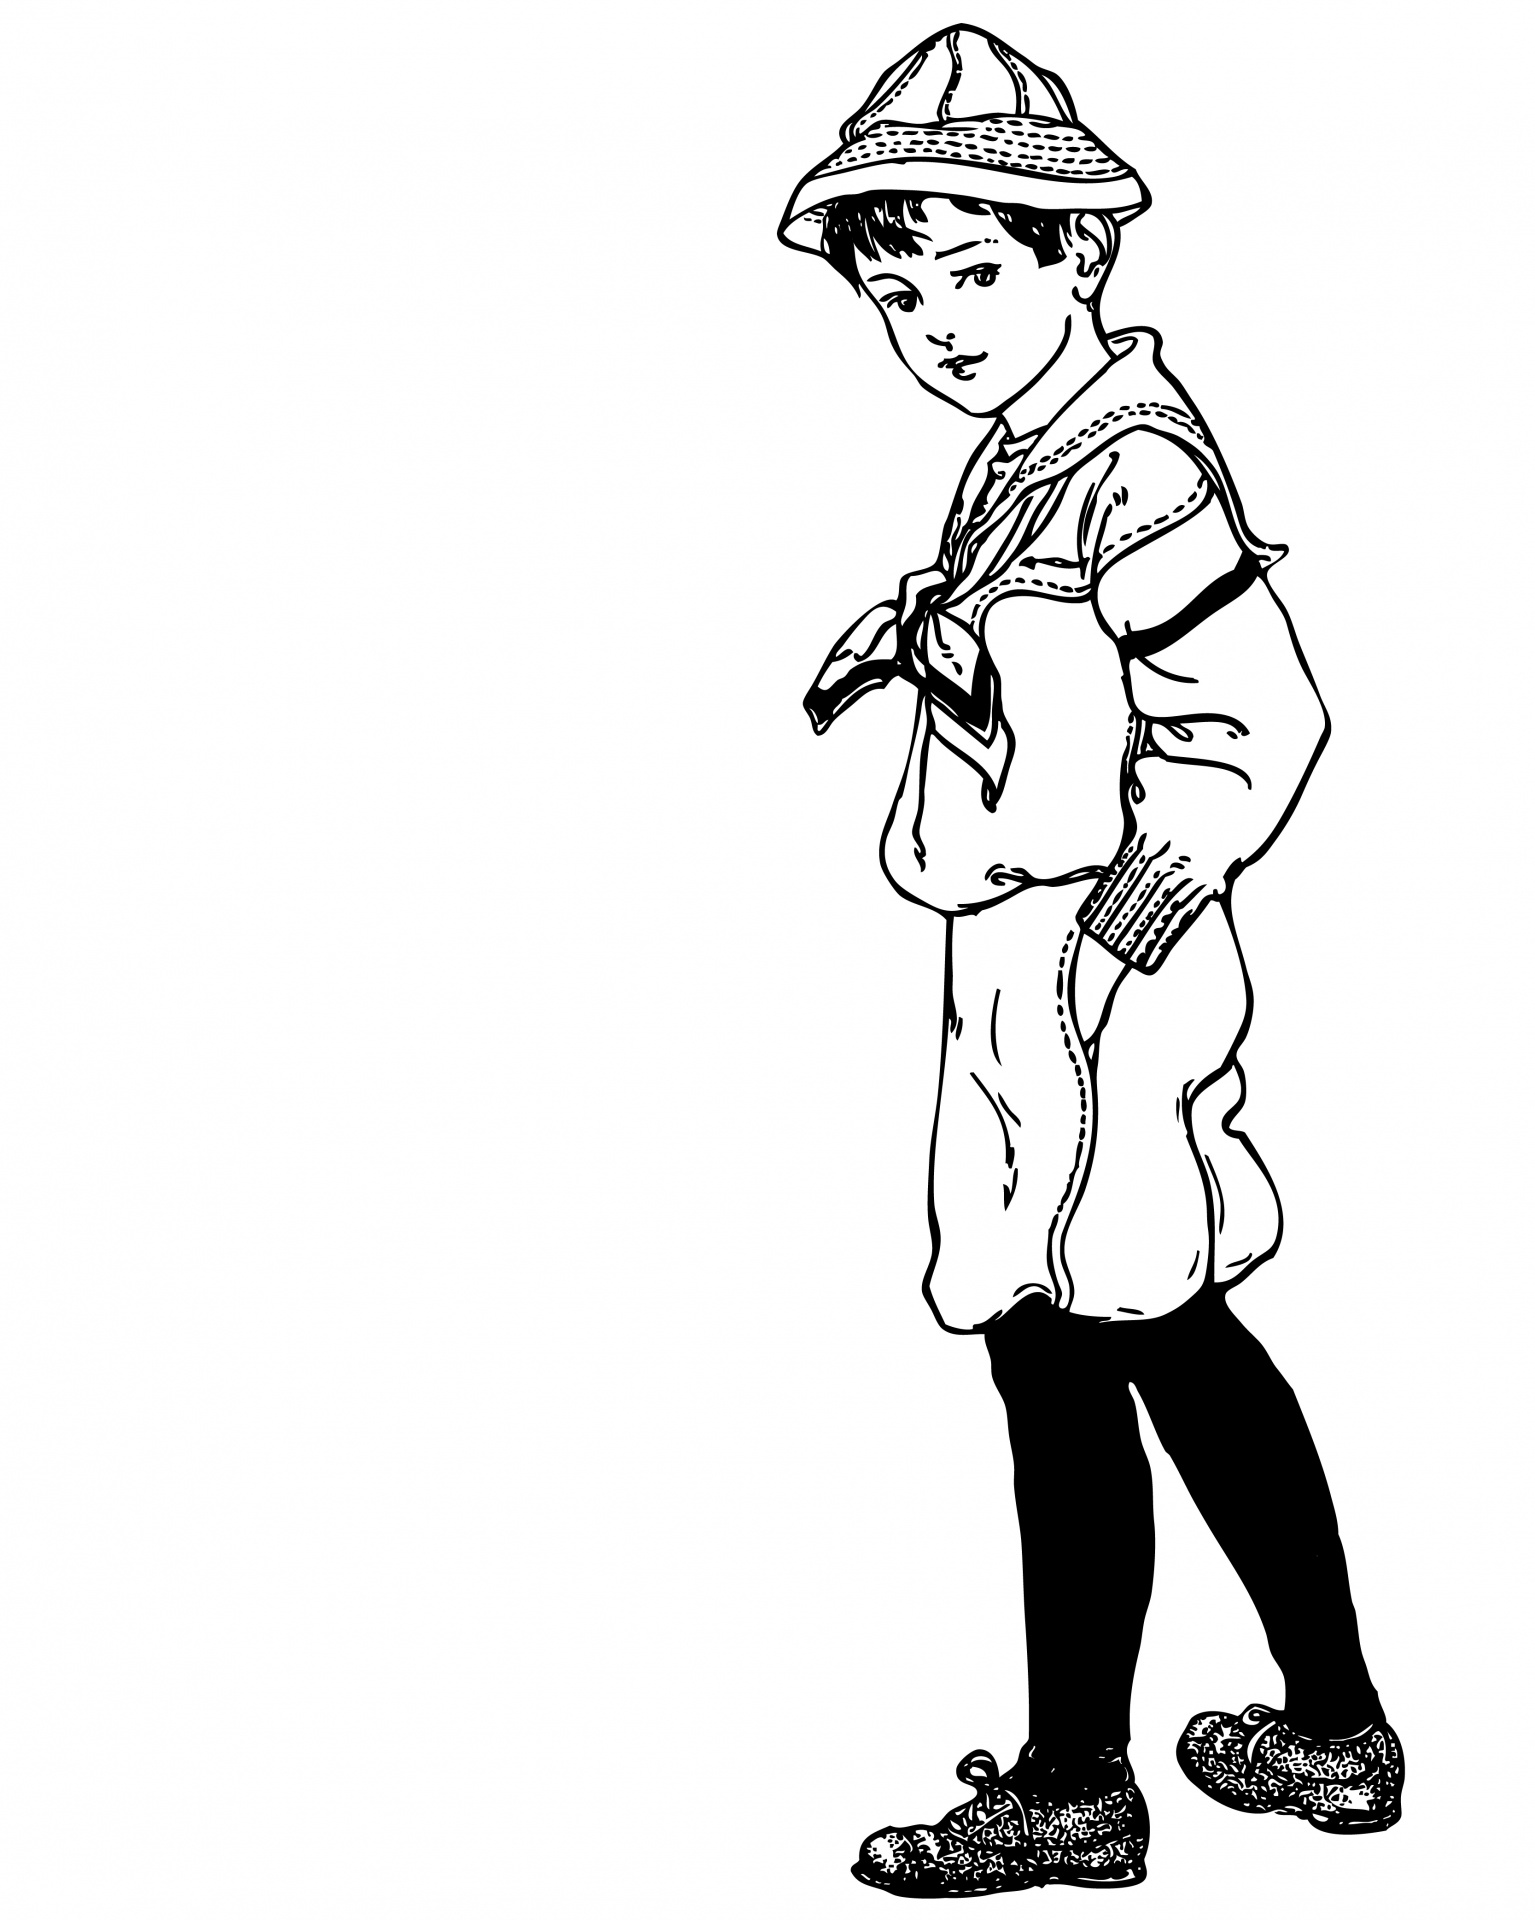 Sailor Boy Vintage Clipart